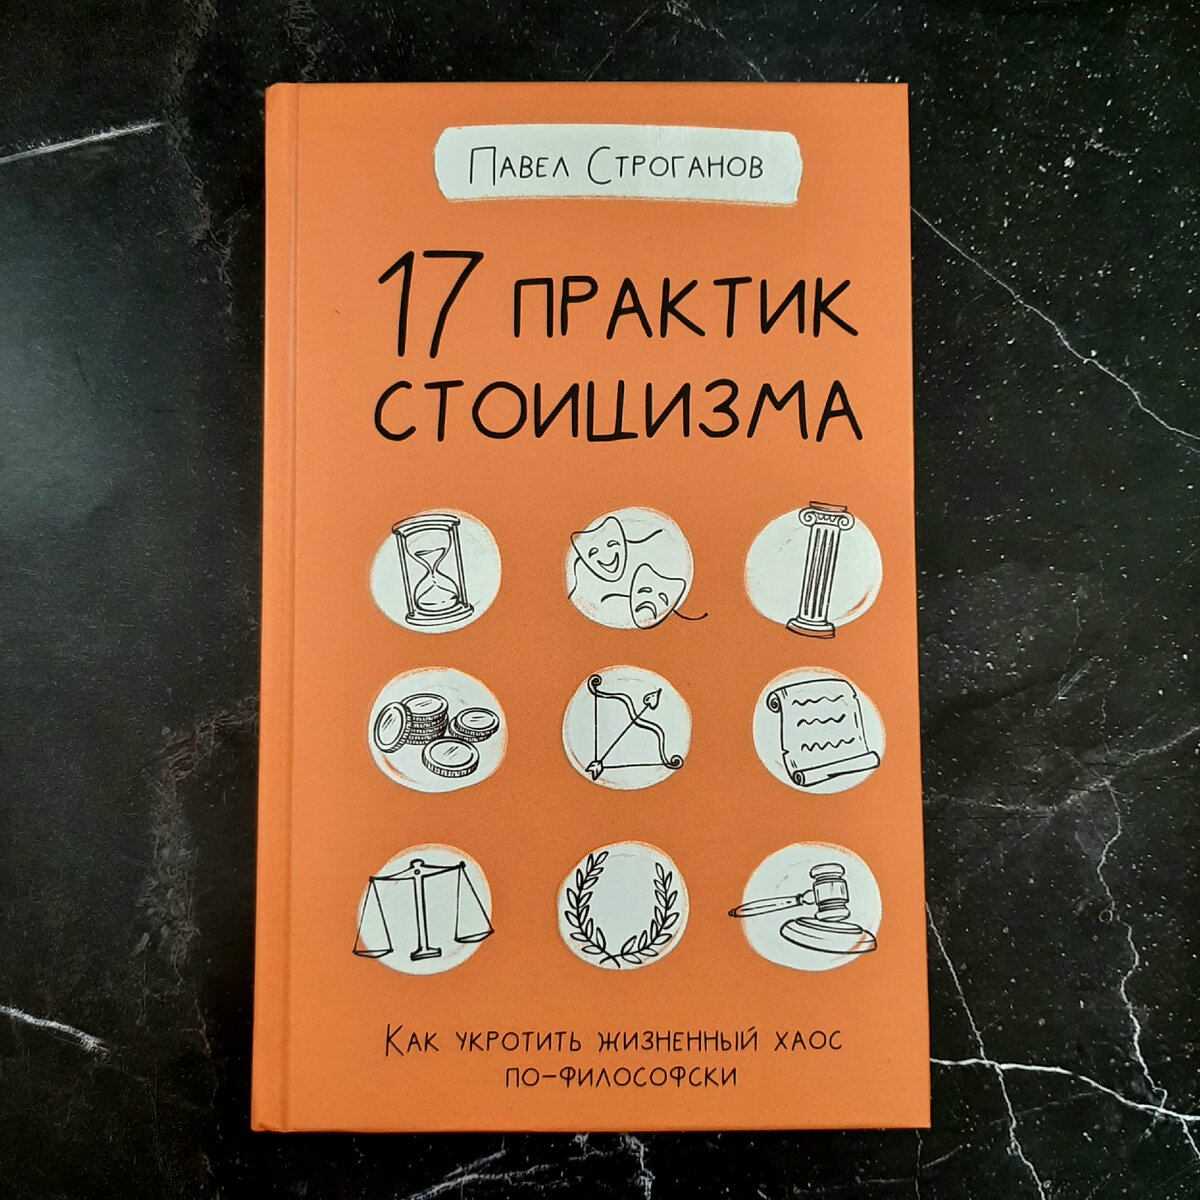 Павел Строганов "17 практик стоицизма". Фото автора